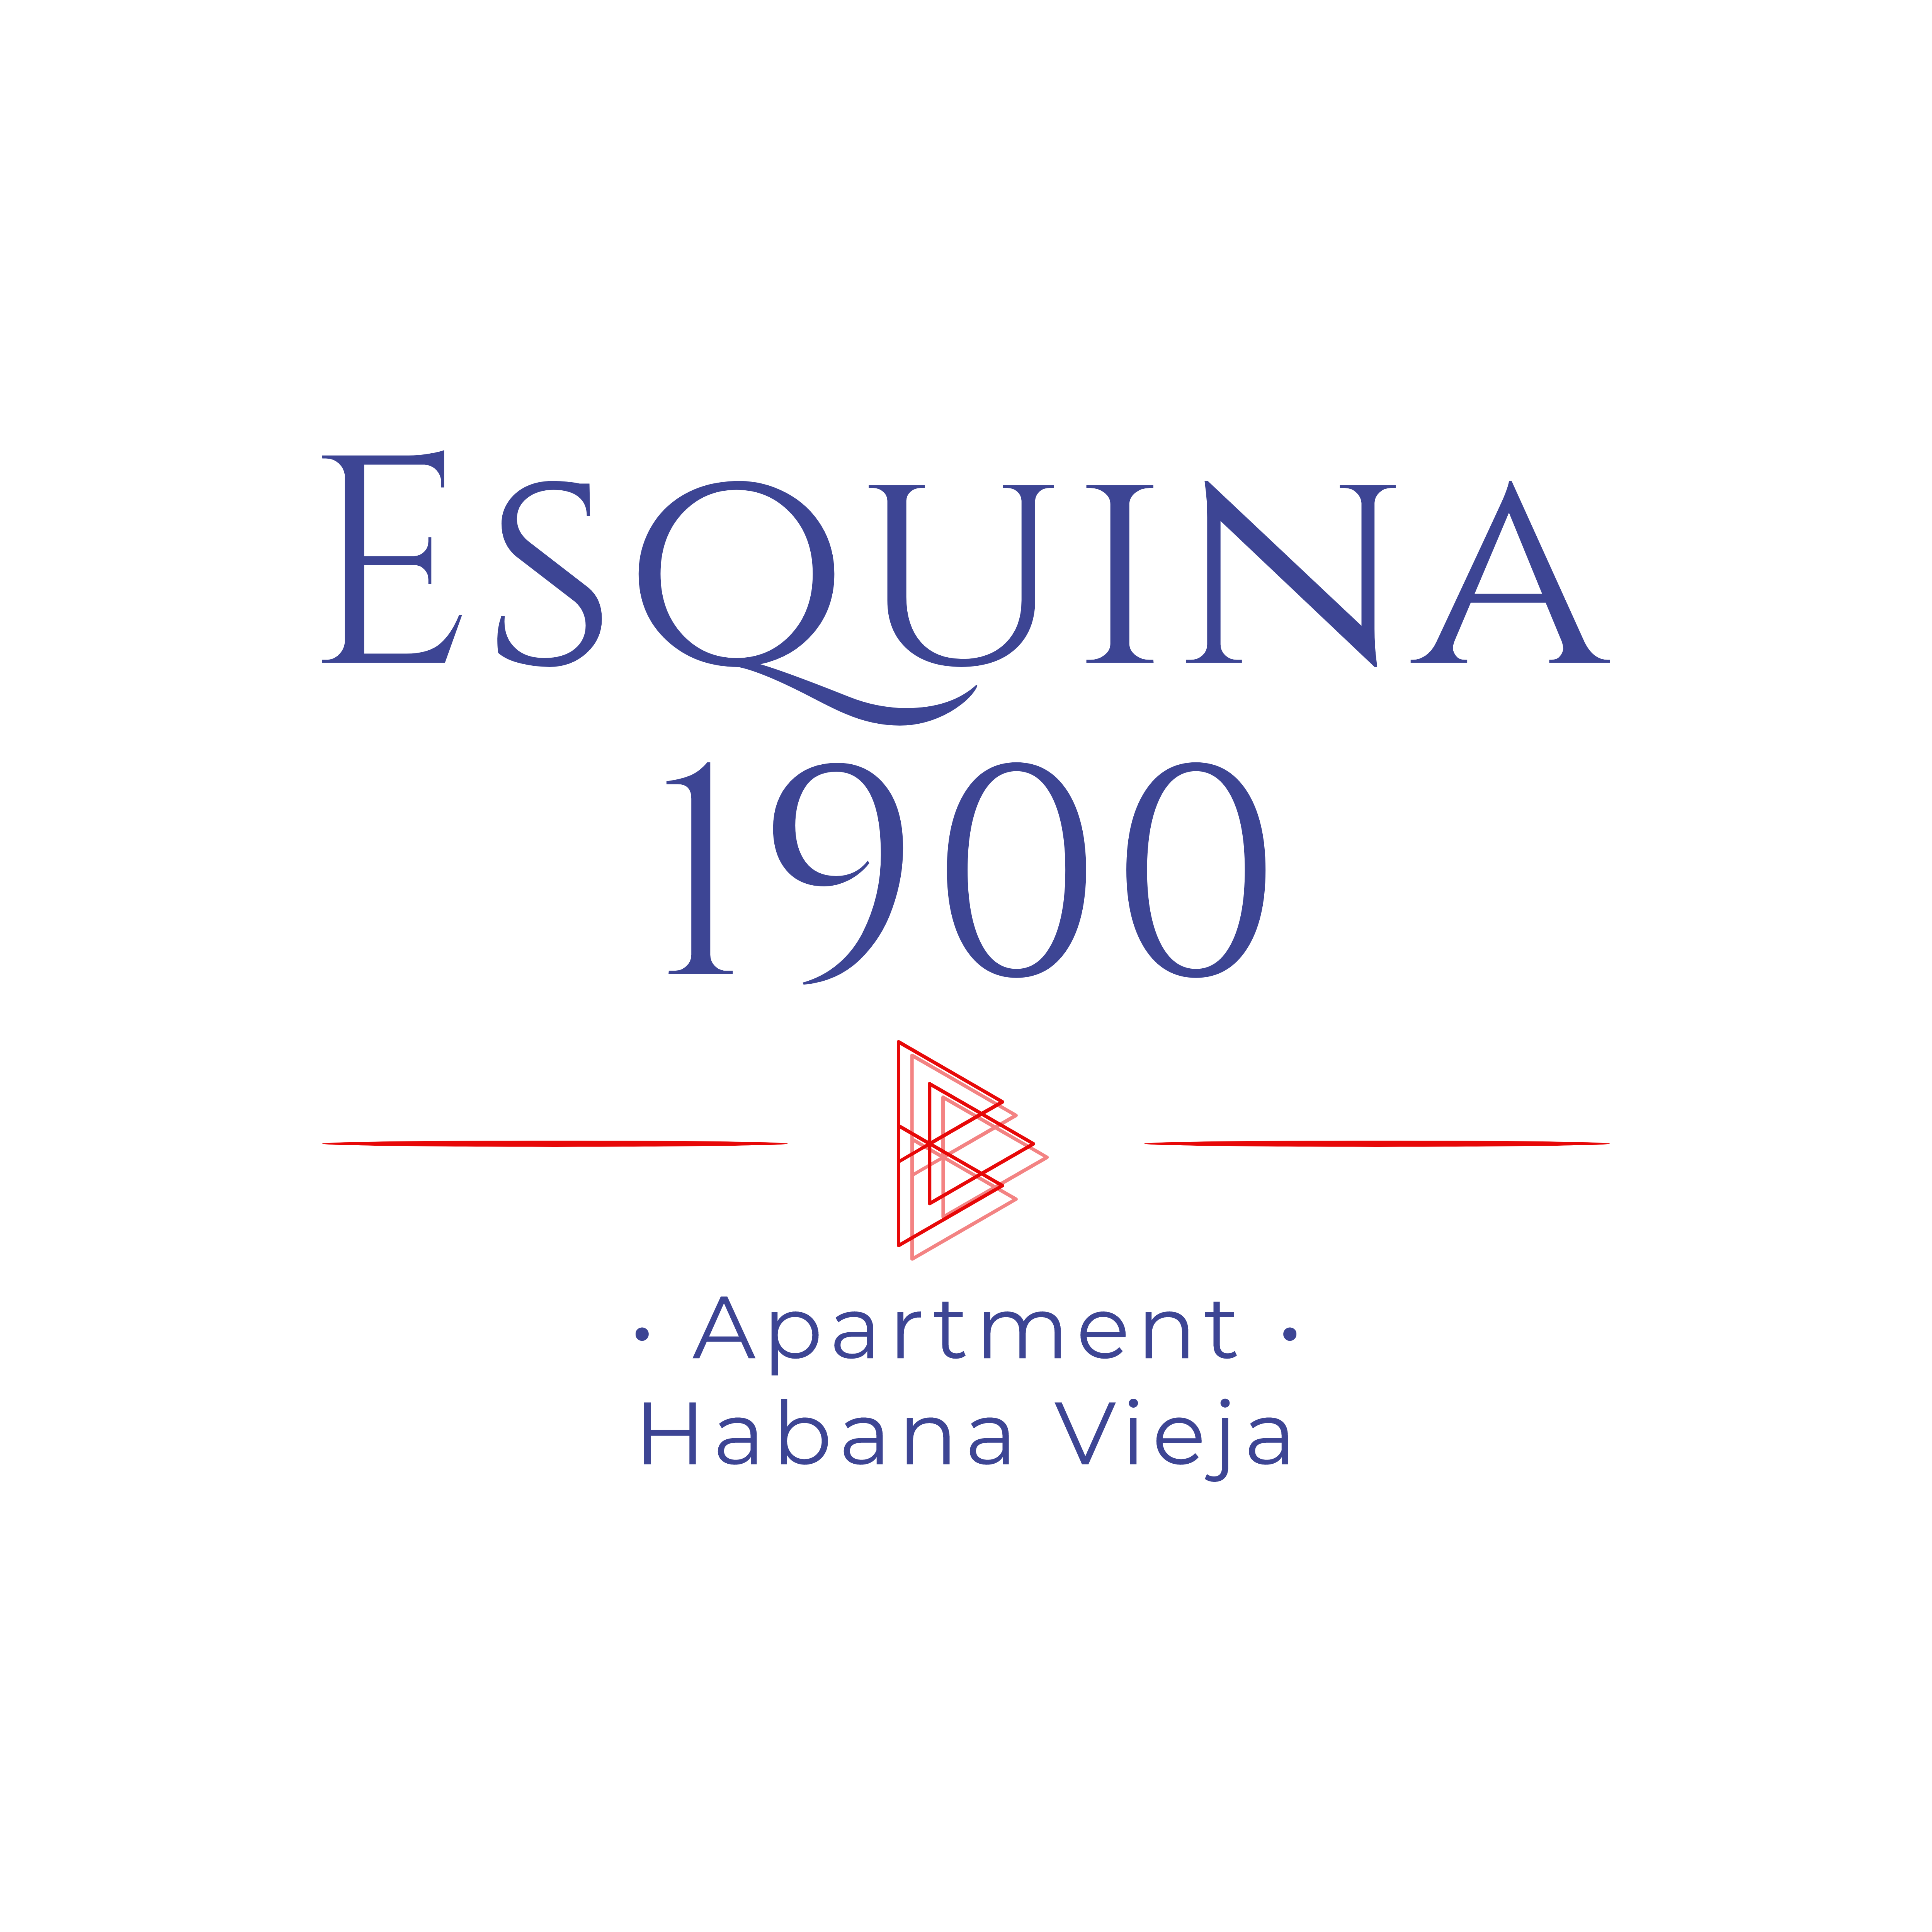 Apartment Esquina 1900